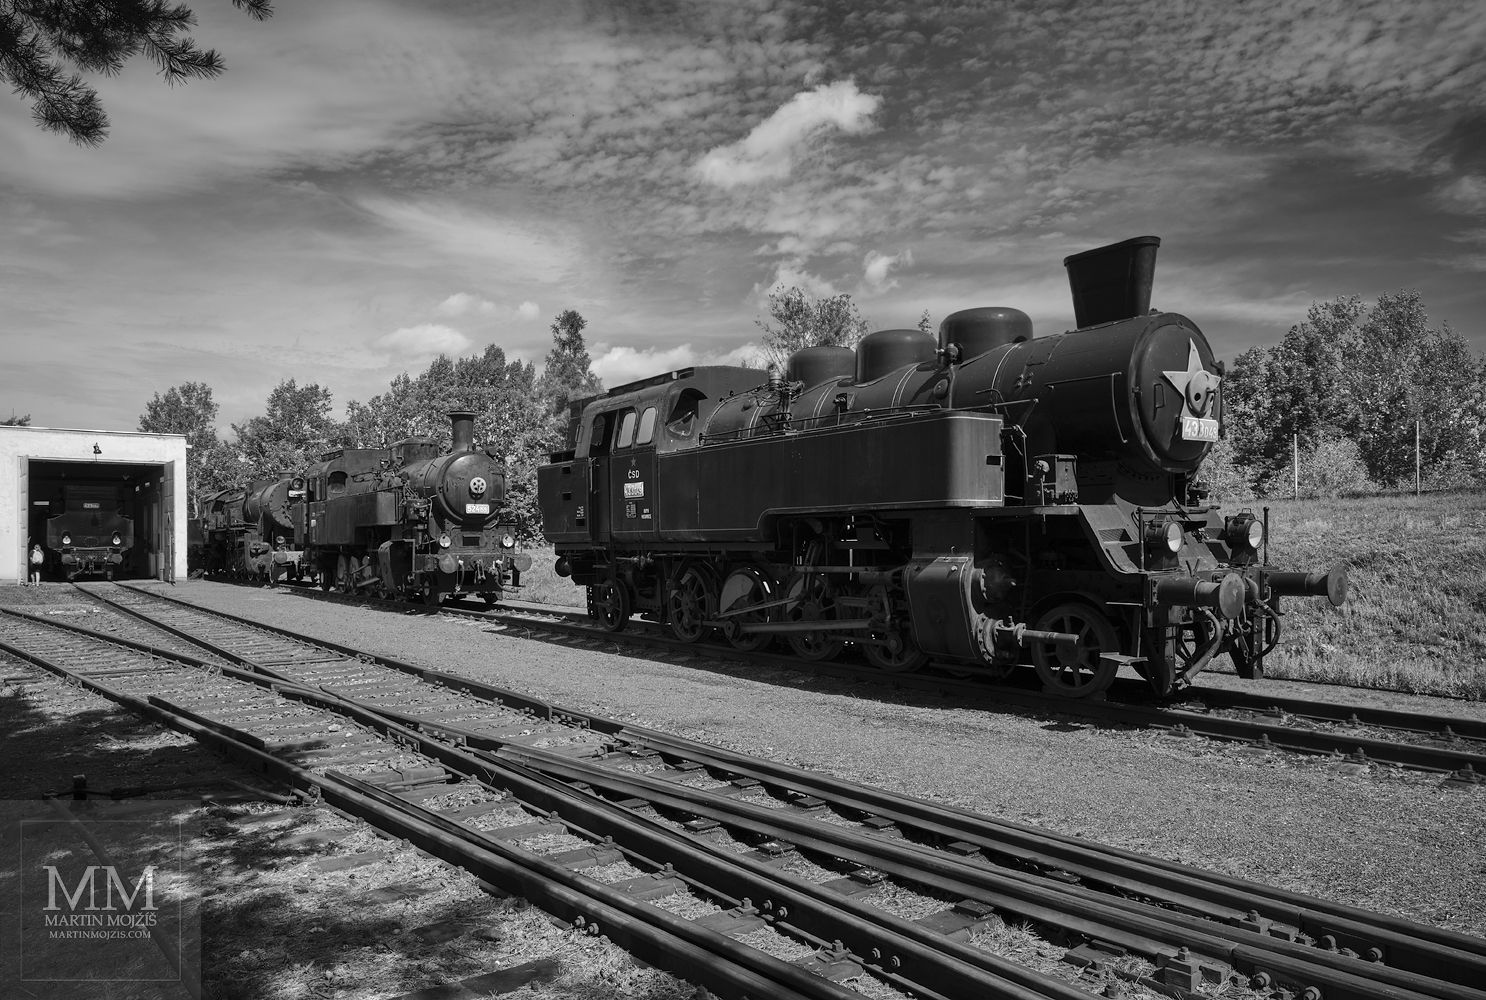 Parní lokomotivy na kolejích v letním odpoledni. Umělecká černobílá fotografie s názvem KLID LETNÍHO ODPOLEDNE I. Fotograf Martin Mojžíš.